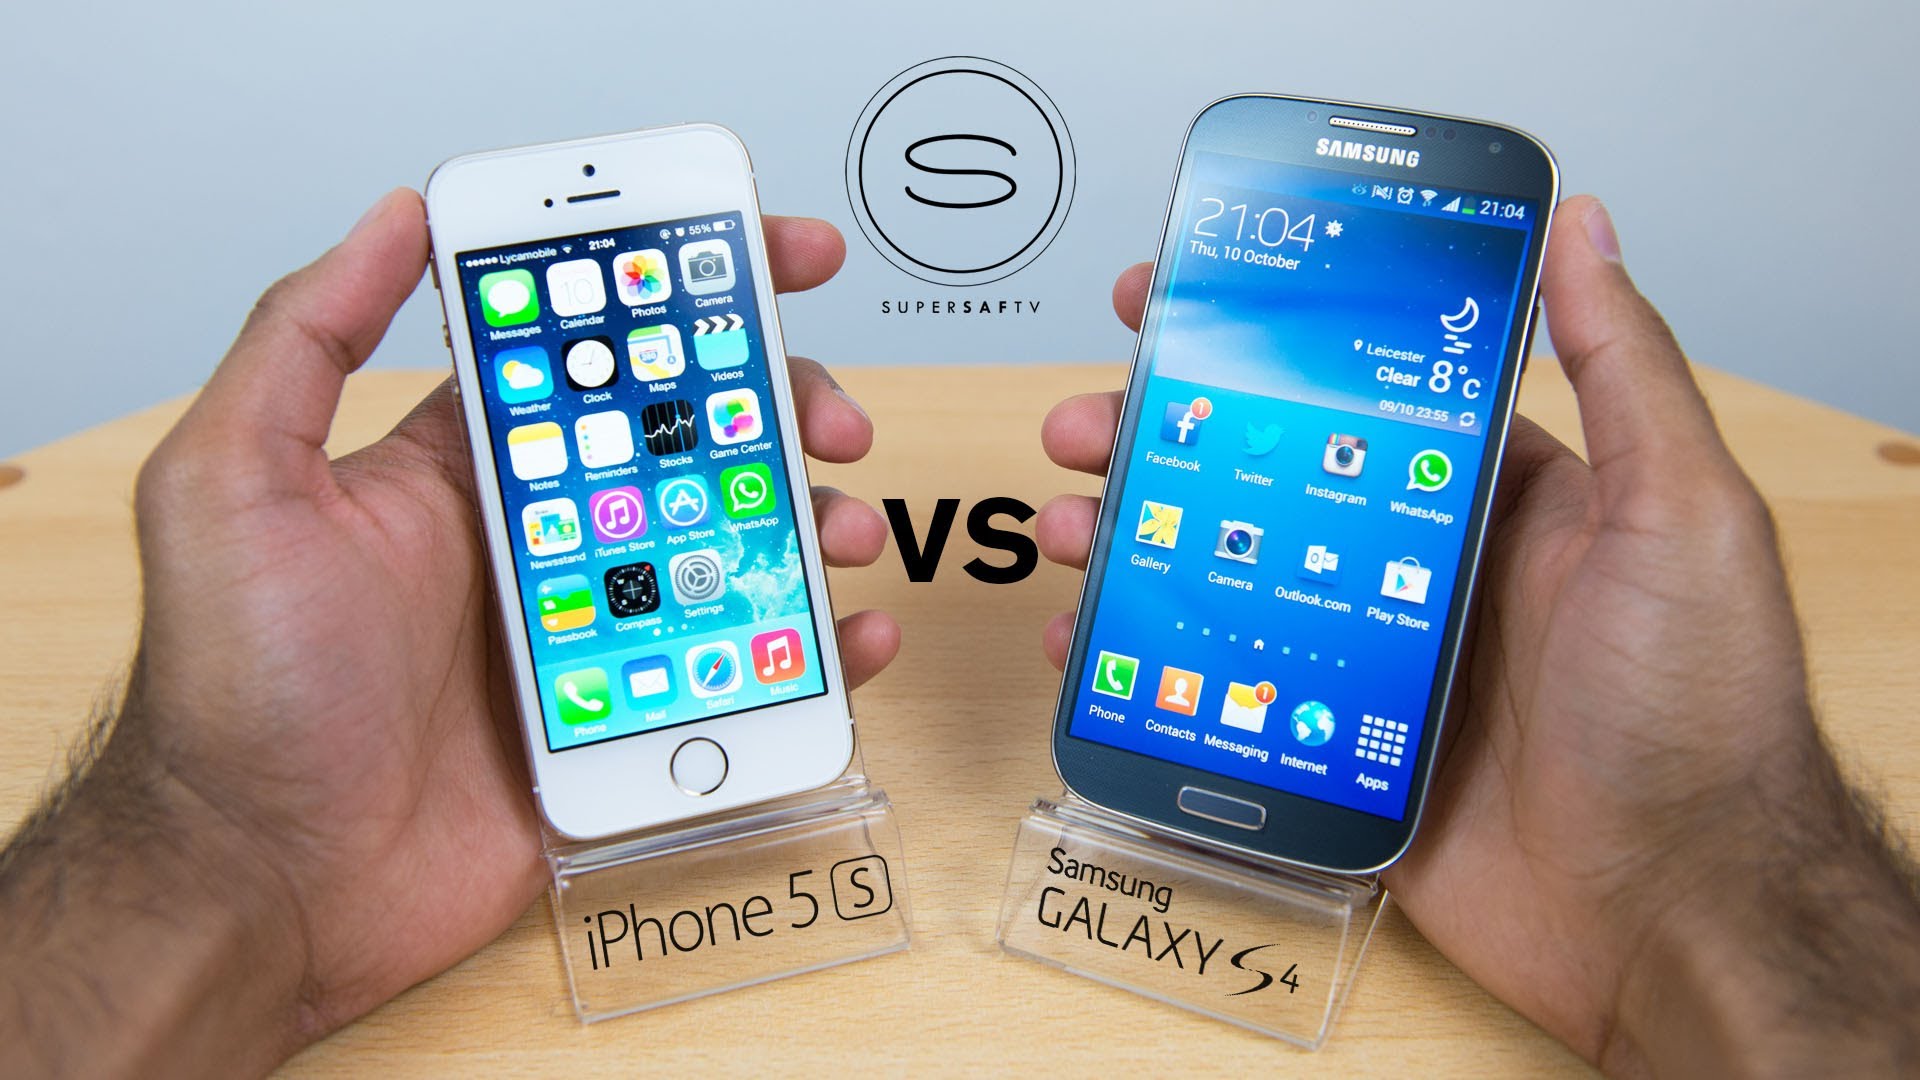 Айфон галакси 4. Айфон 5 самсунг. Iphone 5s Samsung s5 Mini. Iphone 5s Galaxy 5s. Айфон 4 vs самсунг s 4.